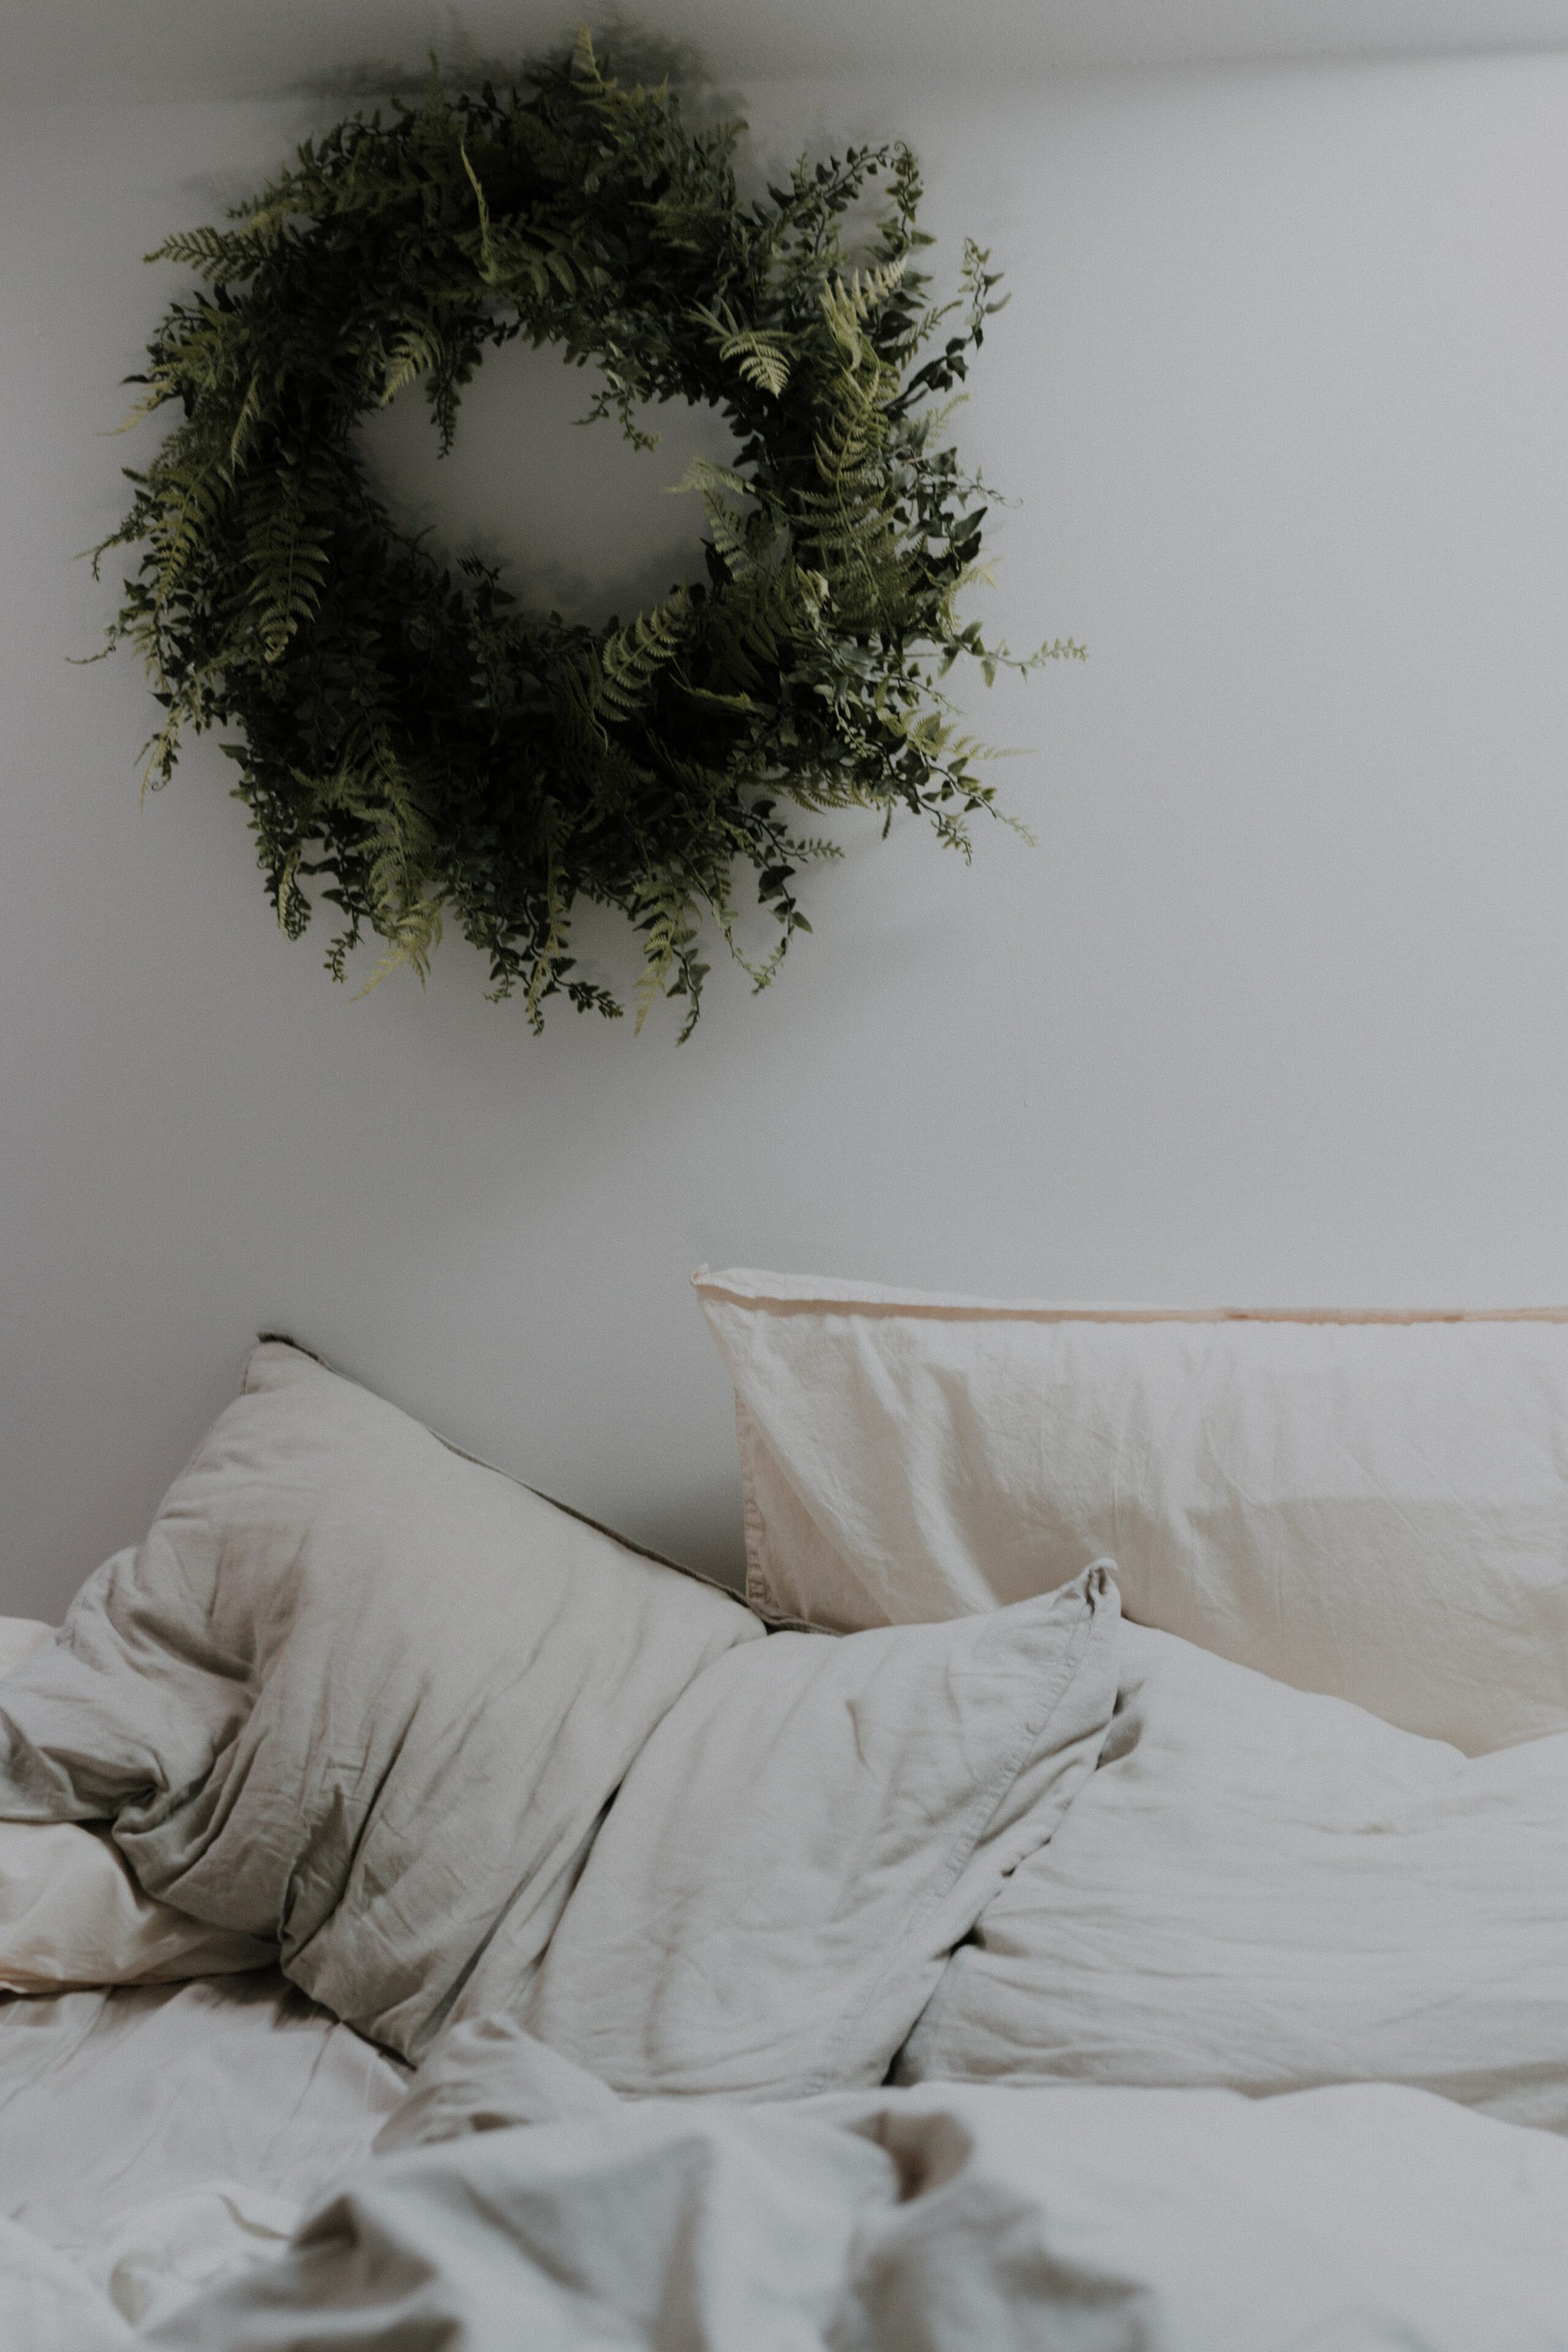 Kissen auf Bett mit grünem Kranz